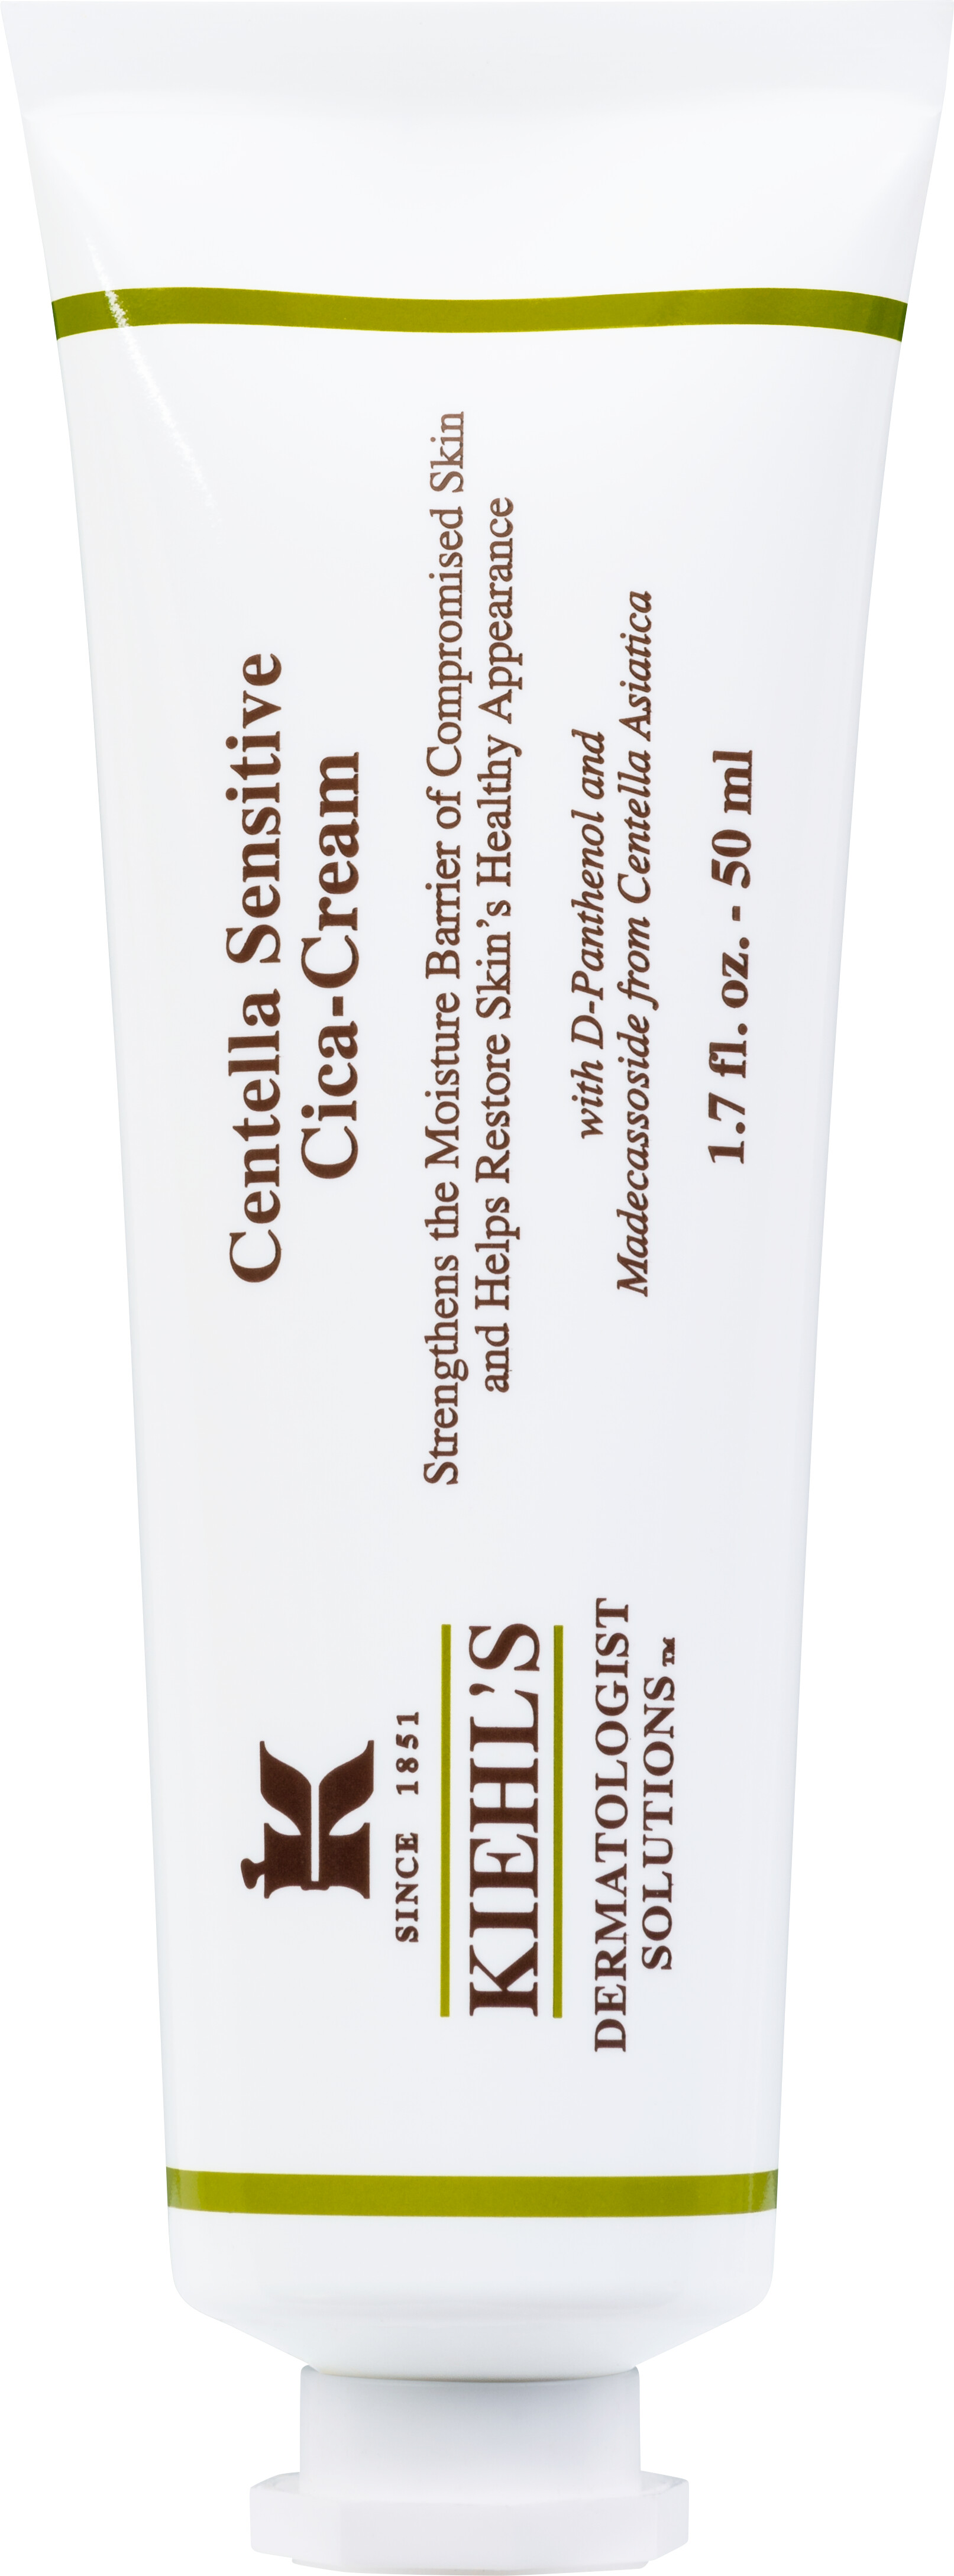 Kiehl's Centella Sensitive Cica-Cream 50ml